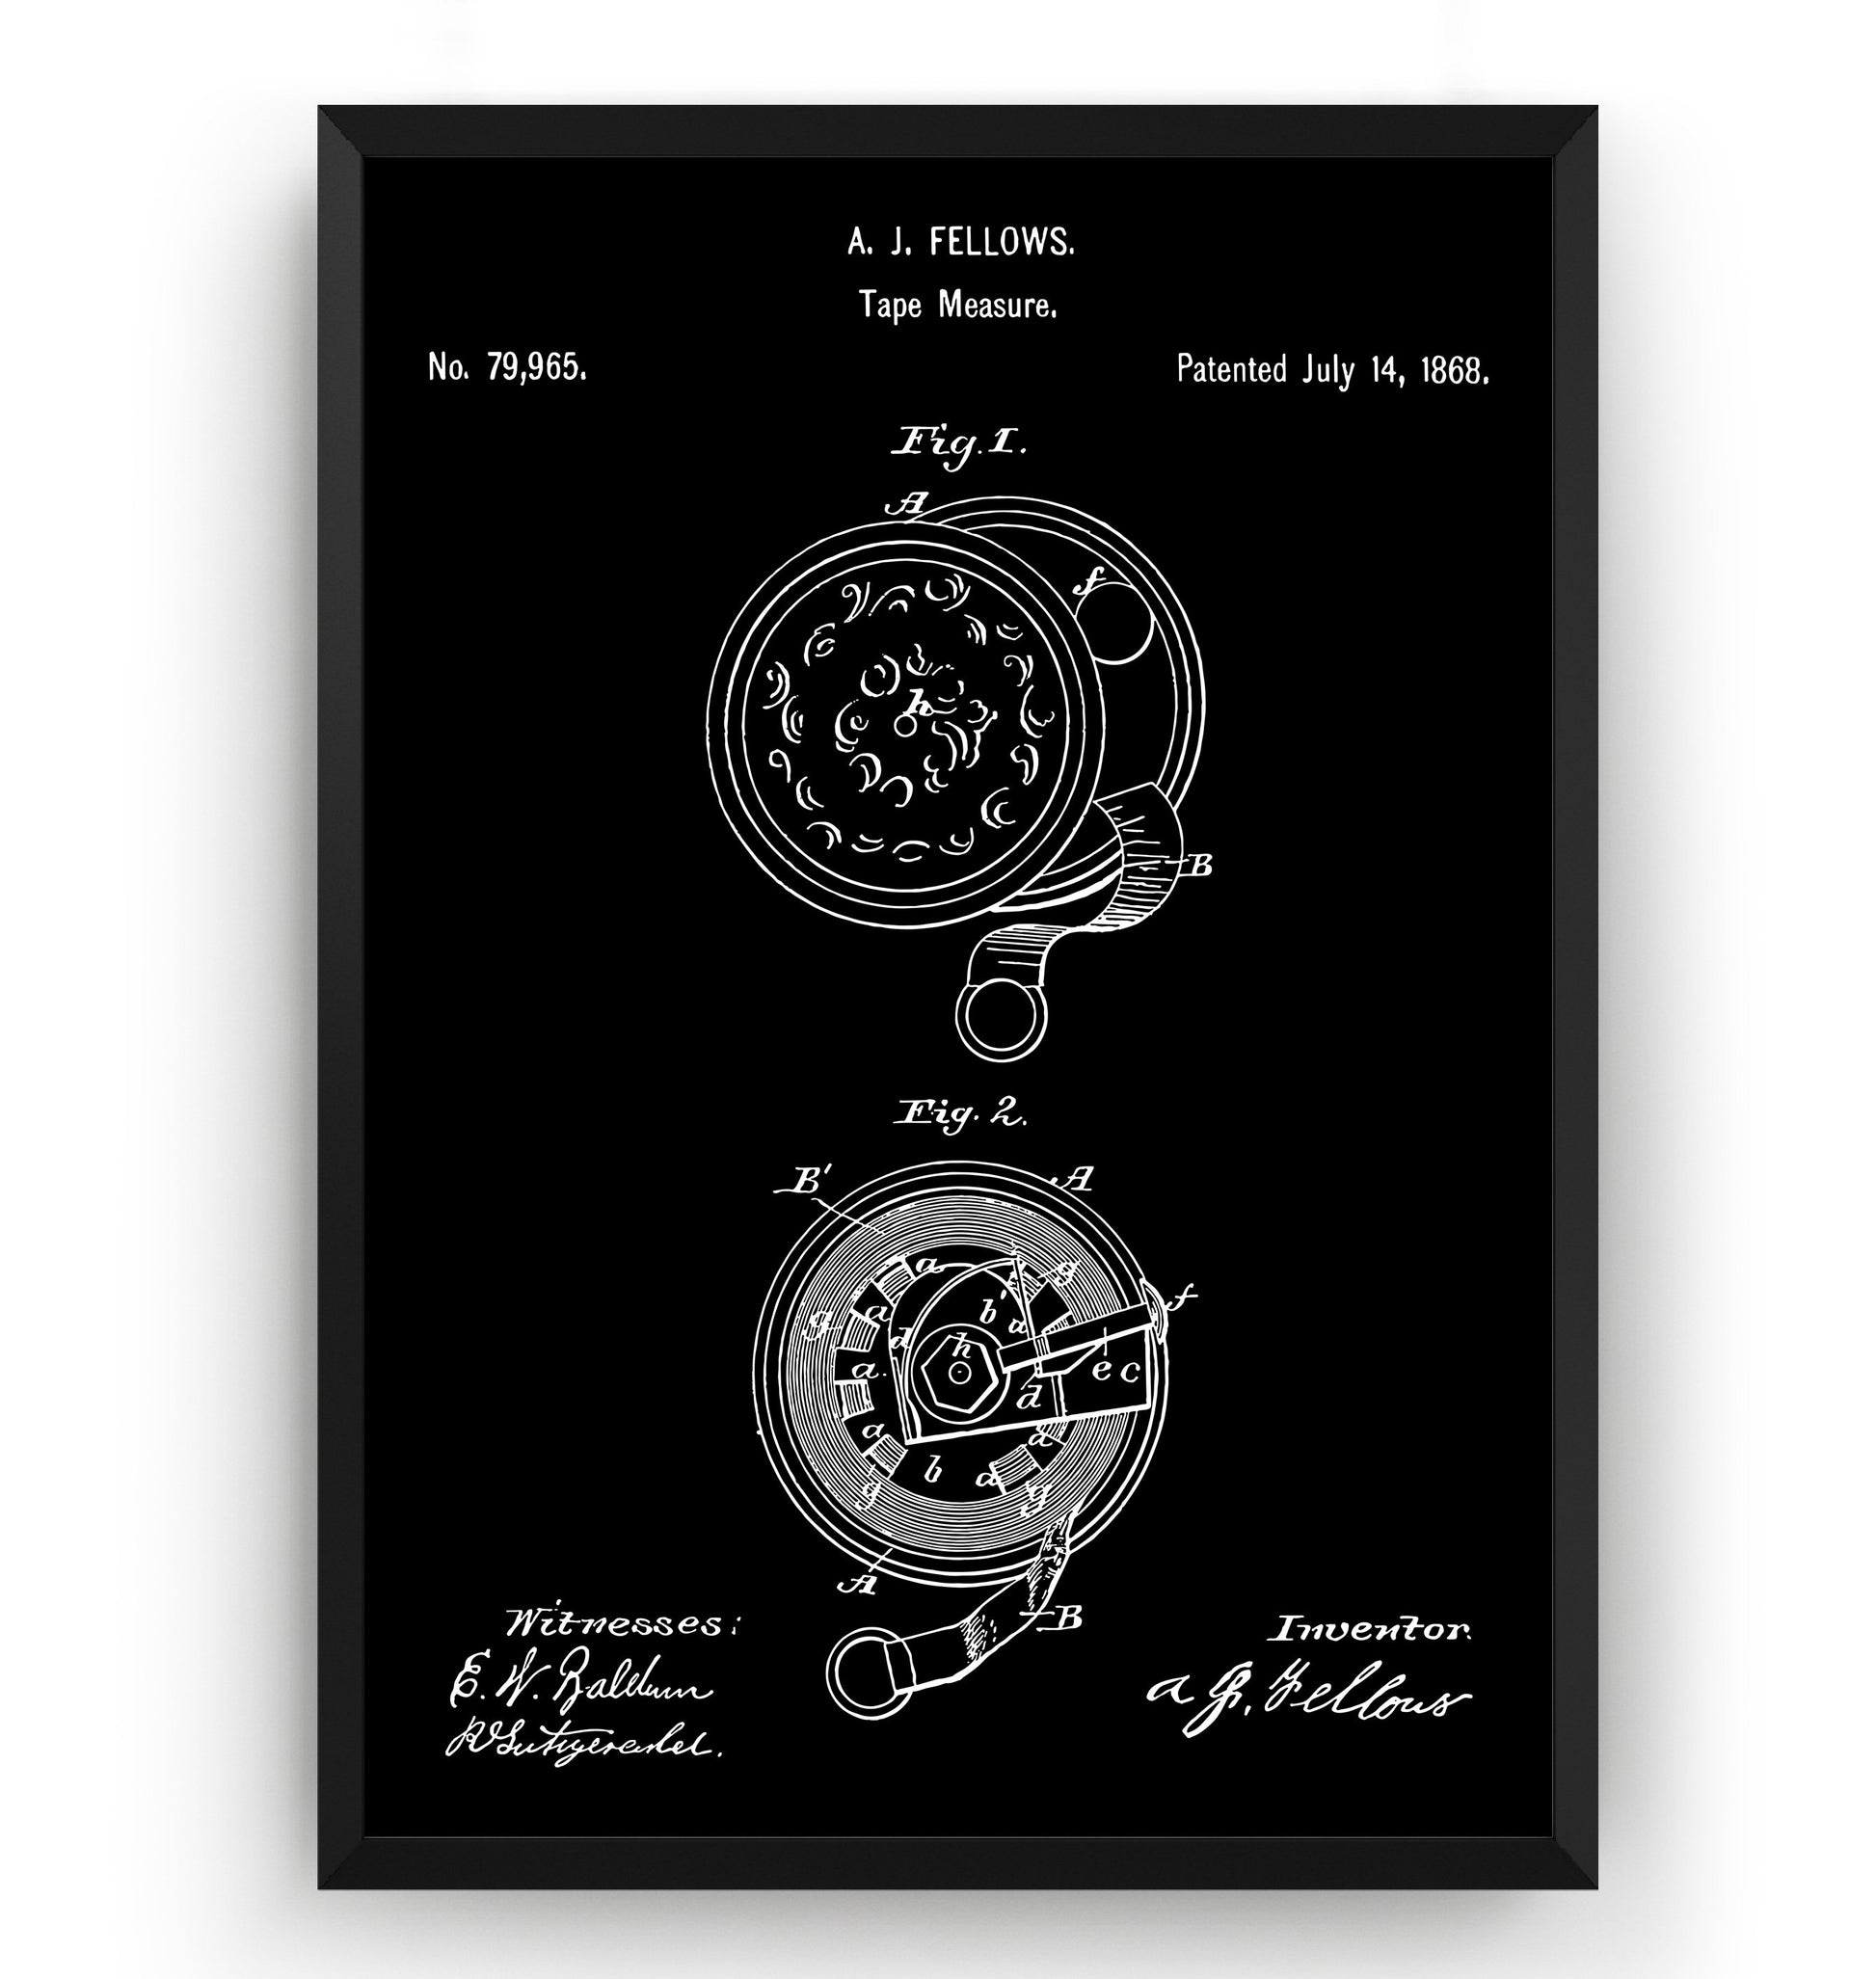 Tape Measure 1868 Patent Print - Magic Posters